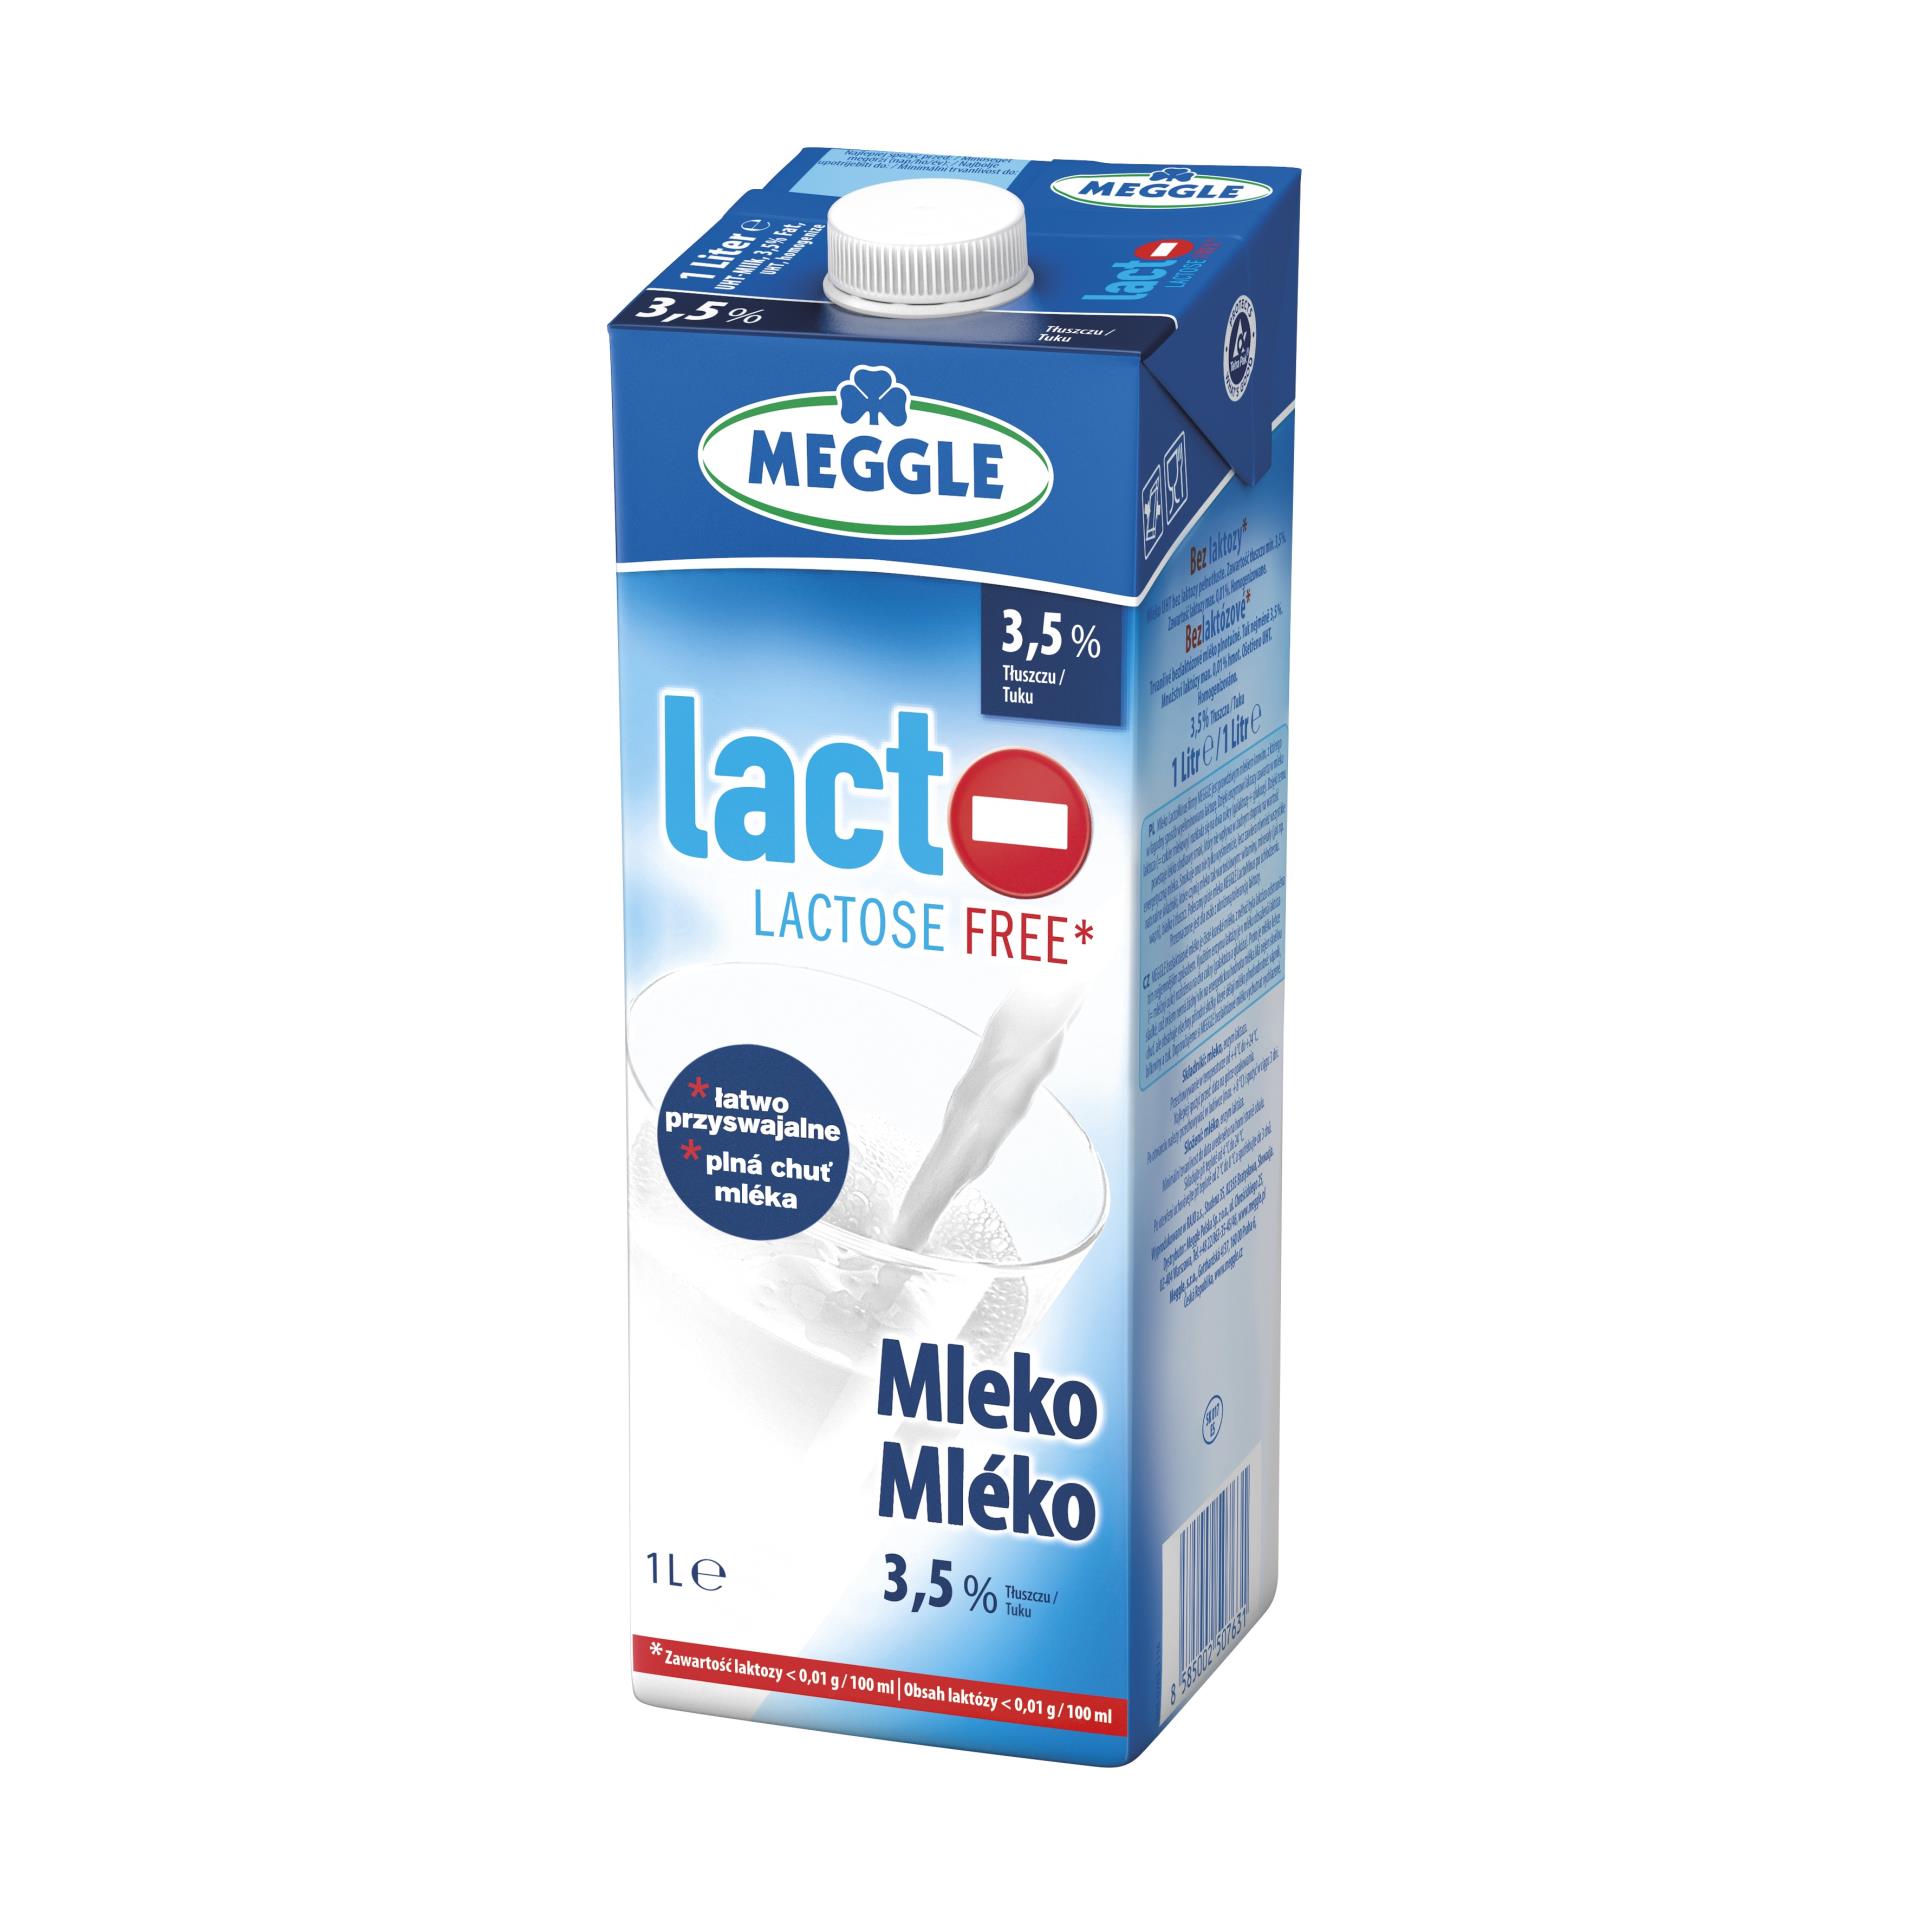 Trvanlivé mléko Meggle - bez laktózy, 3,5%, 1 l